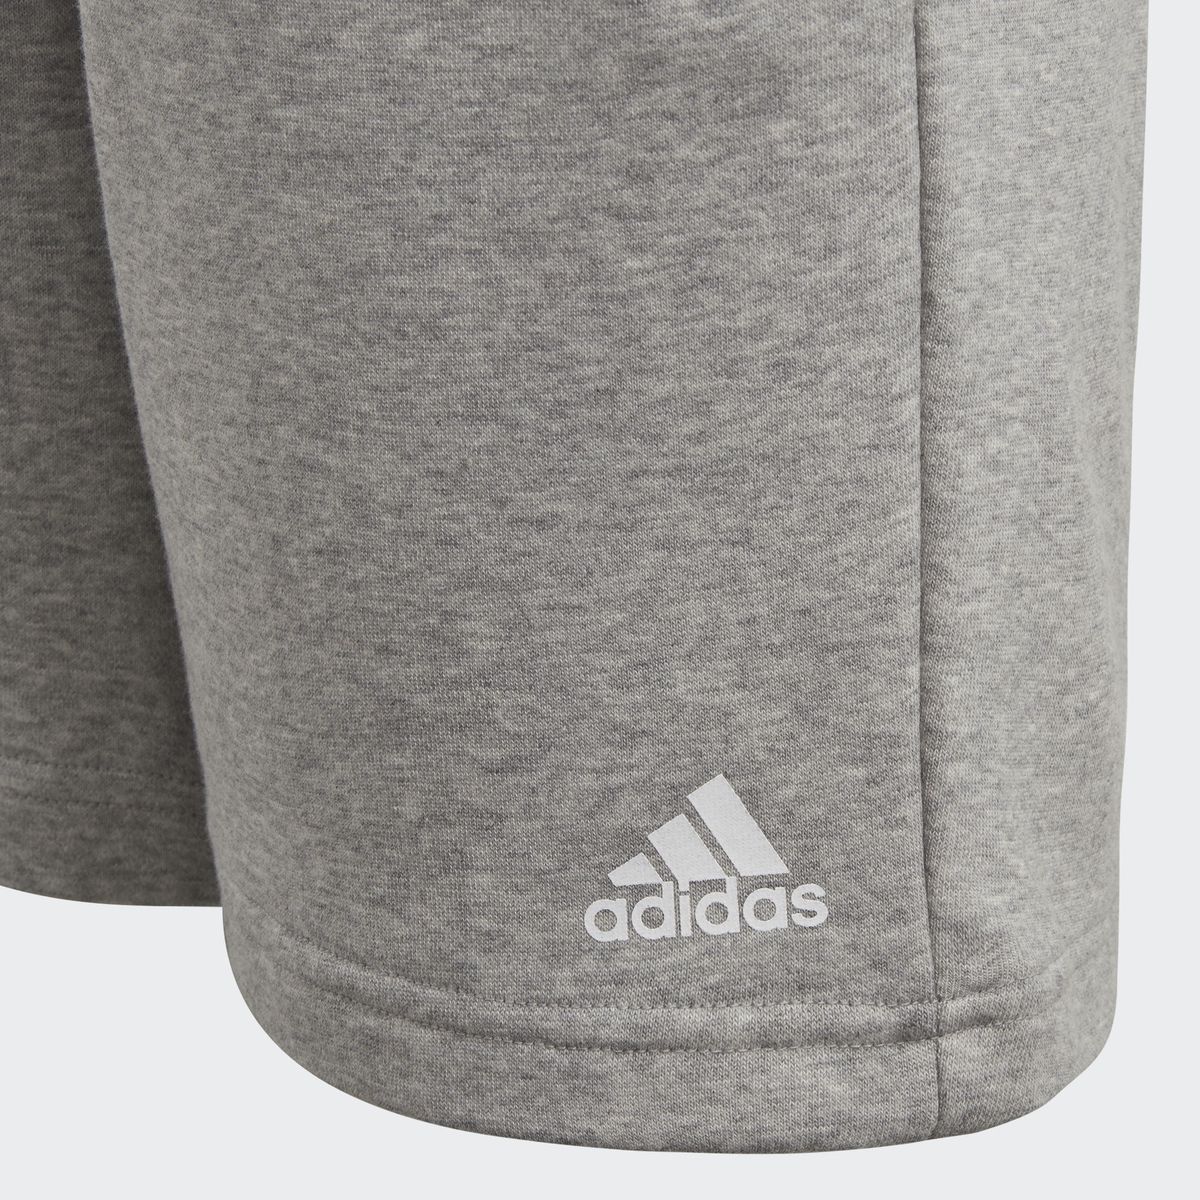    Adidas Yb Logo Short, : . CF6534.  122